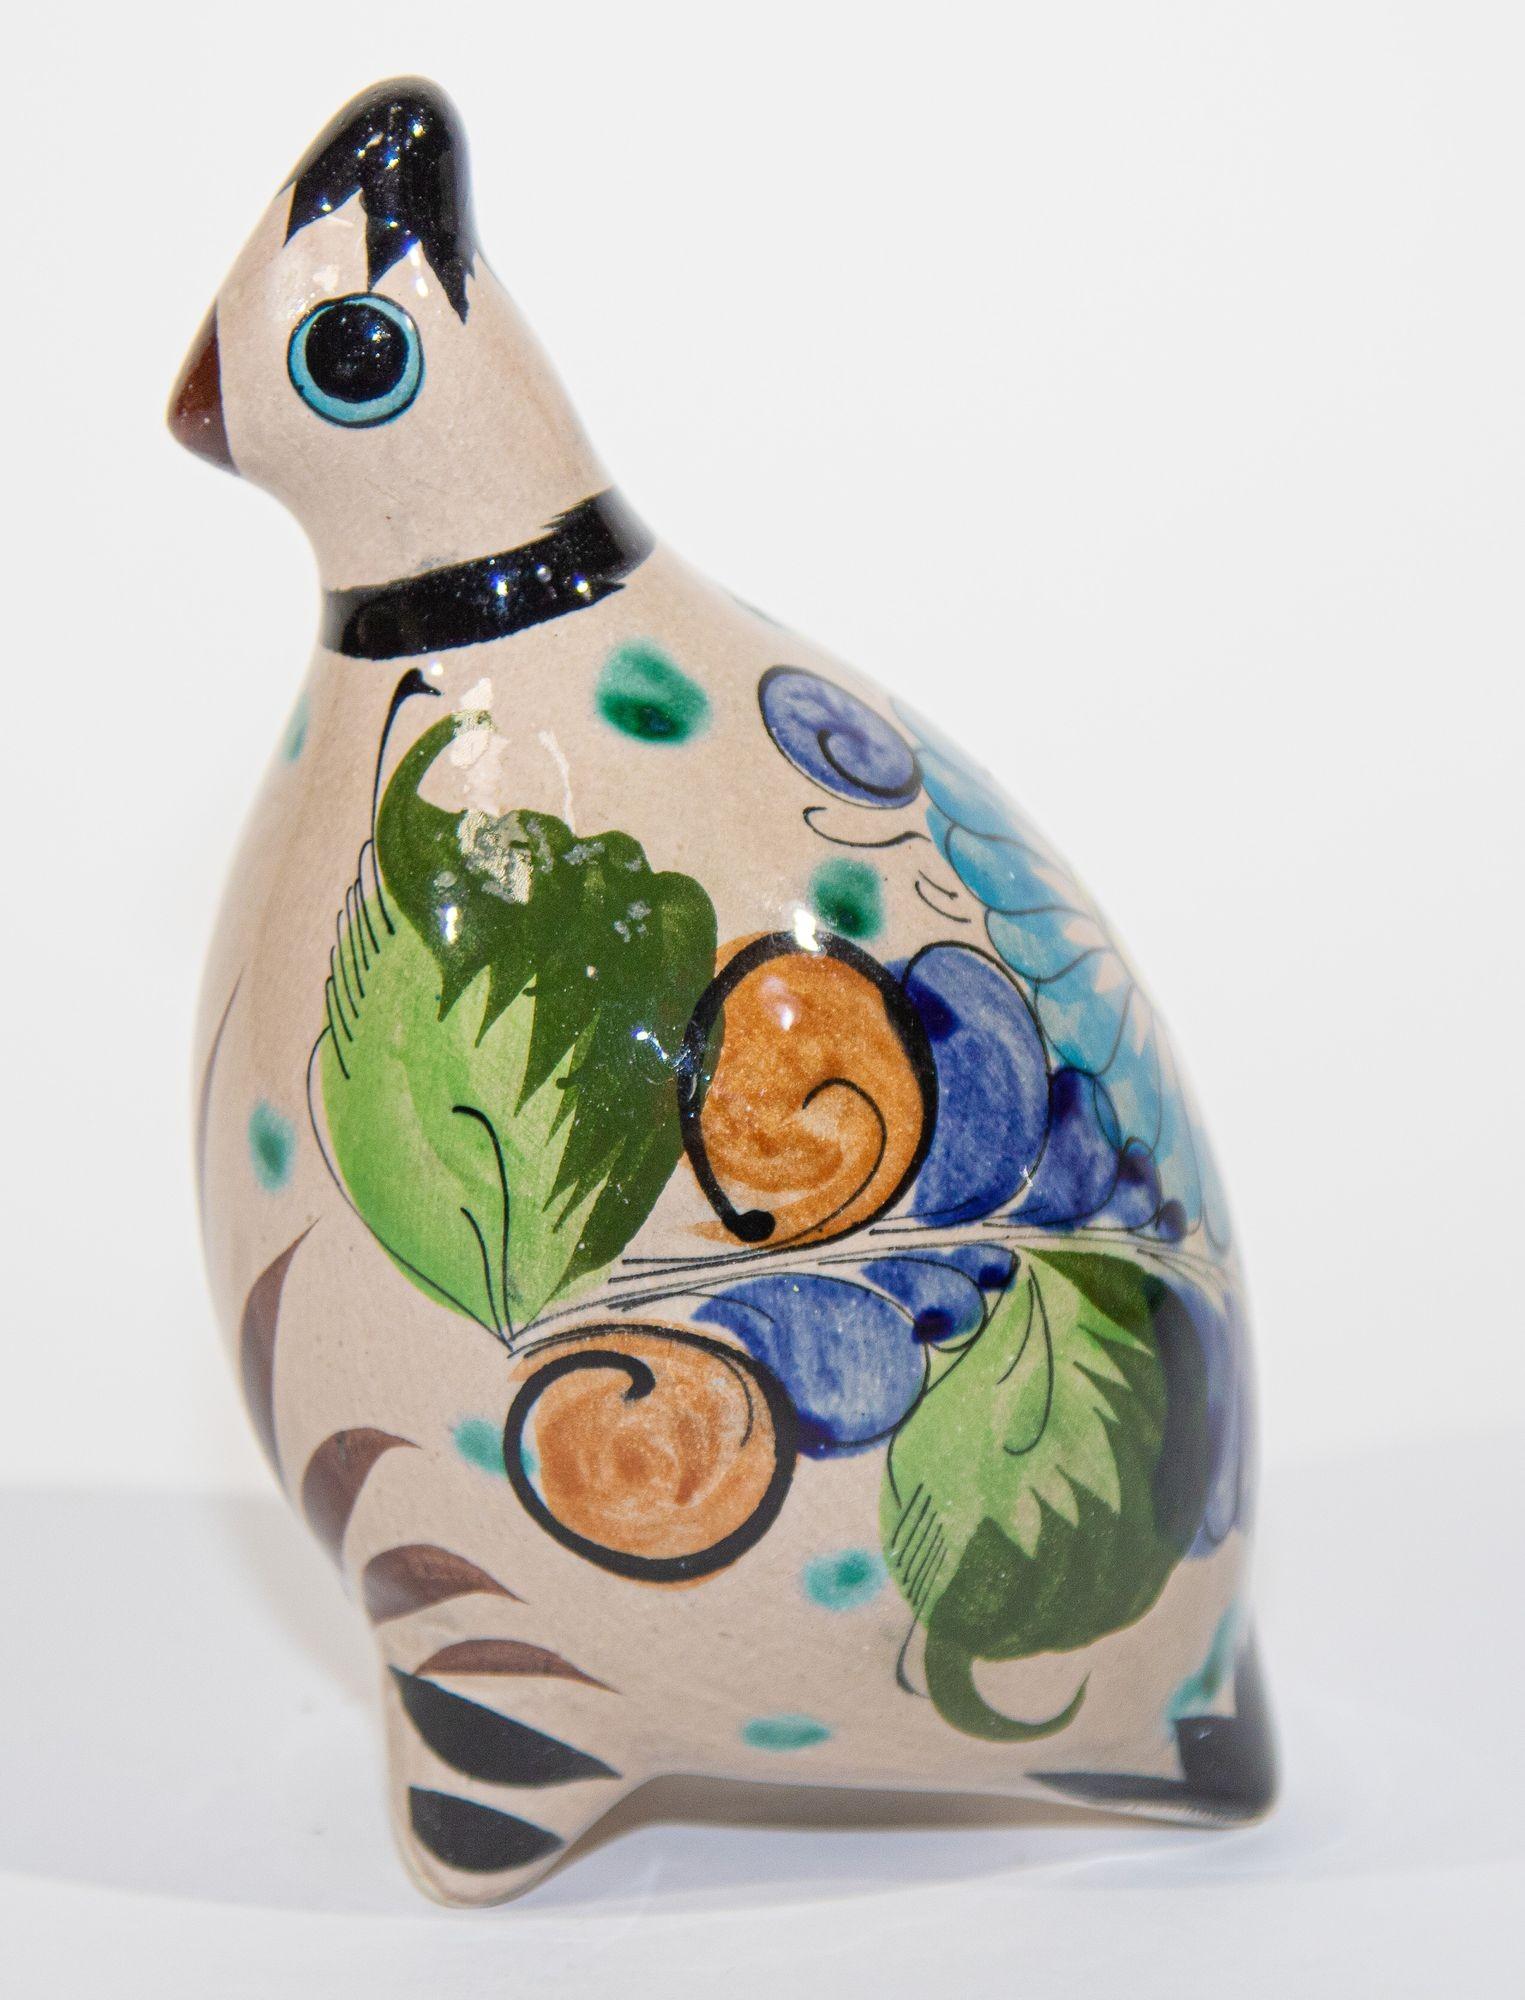 Vintage Ken Edwards Mexican ceramic quail bird form Tonala Pottery.
Magnifique poterie d'art mexicaine TONALA, fabriquée et peinte à la main.
Oiseau décoratif signé du studio El Palomar Cat de Ken Edwards.
Tonala d'oiseau d'art populaire de